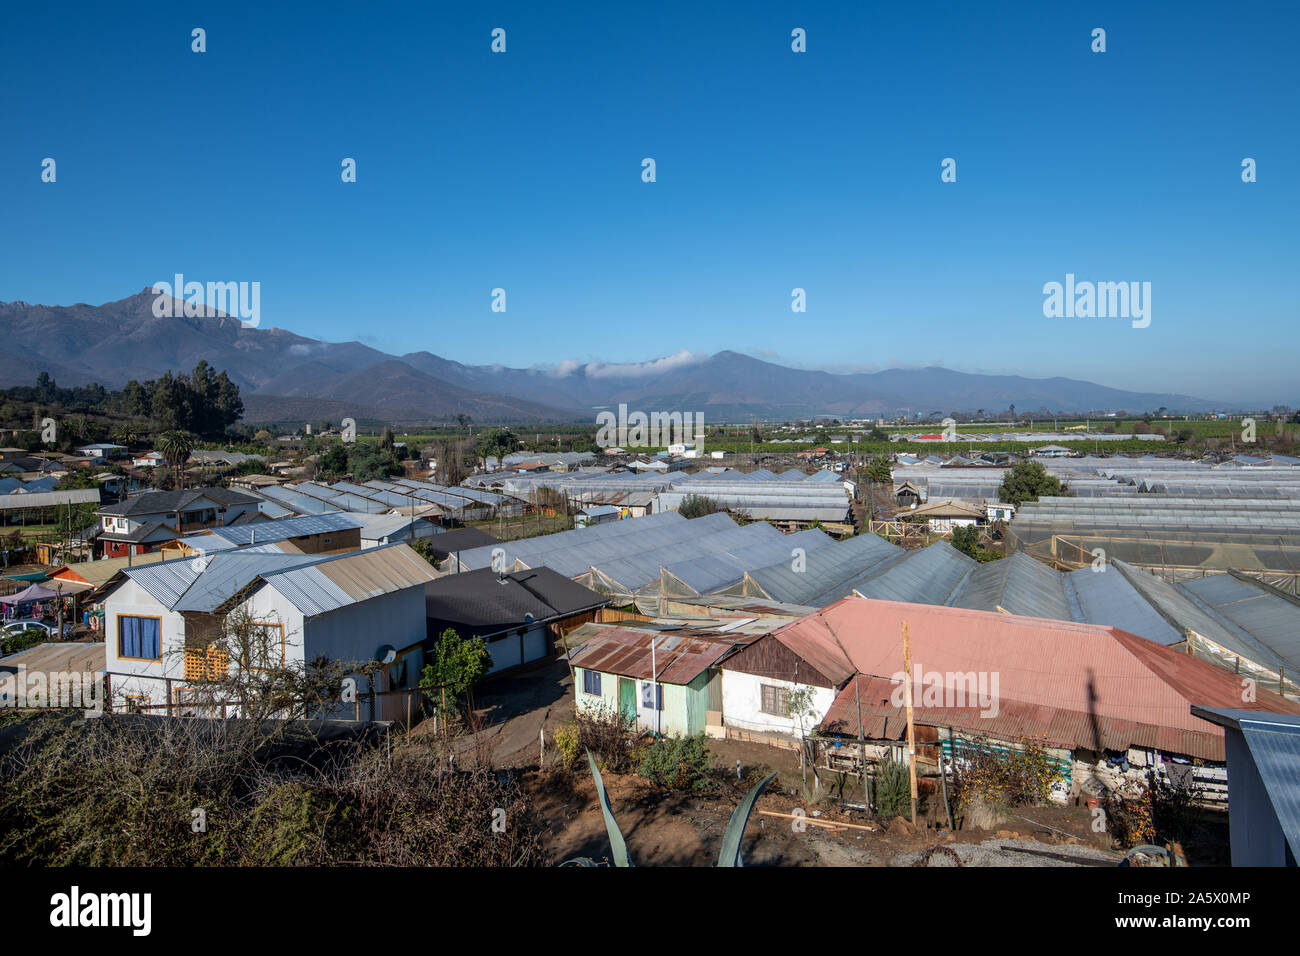 A small farming community nestled beneath a mountain range, La Serena , Chile Stock Photo